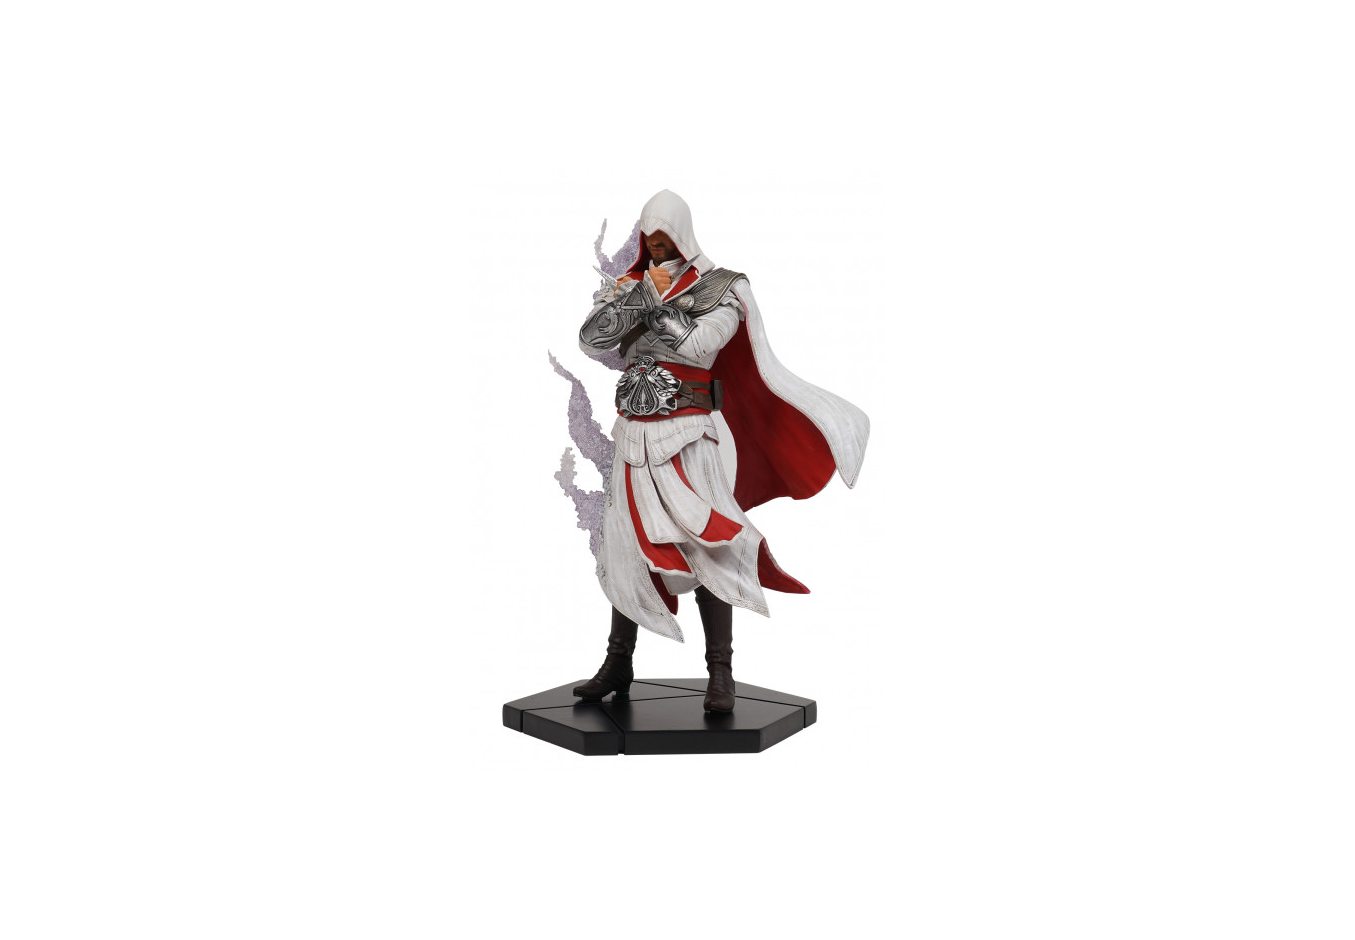  Фигурка Assassin's Creed Братство крови Ezio Animus Collection (24 см)